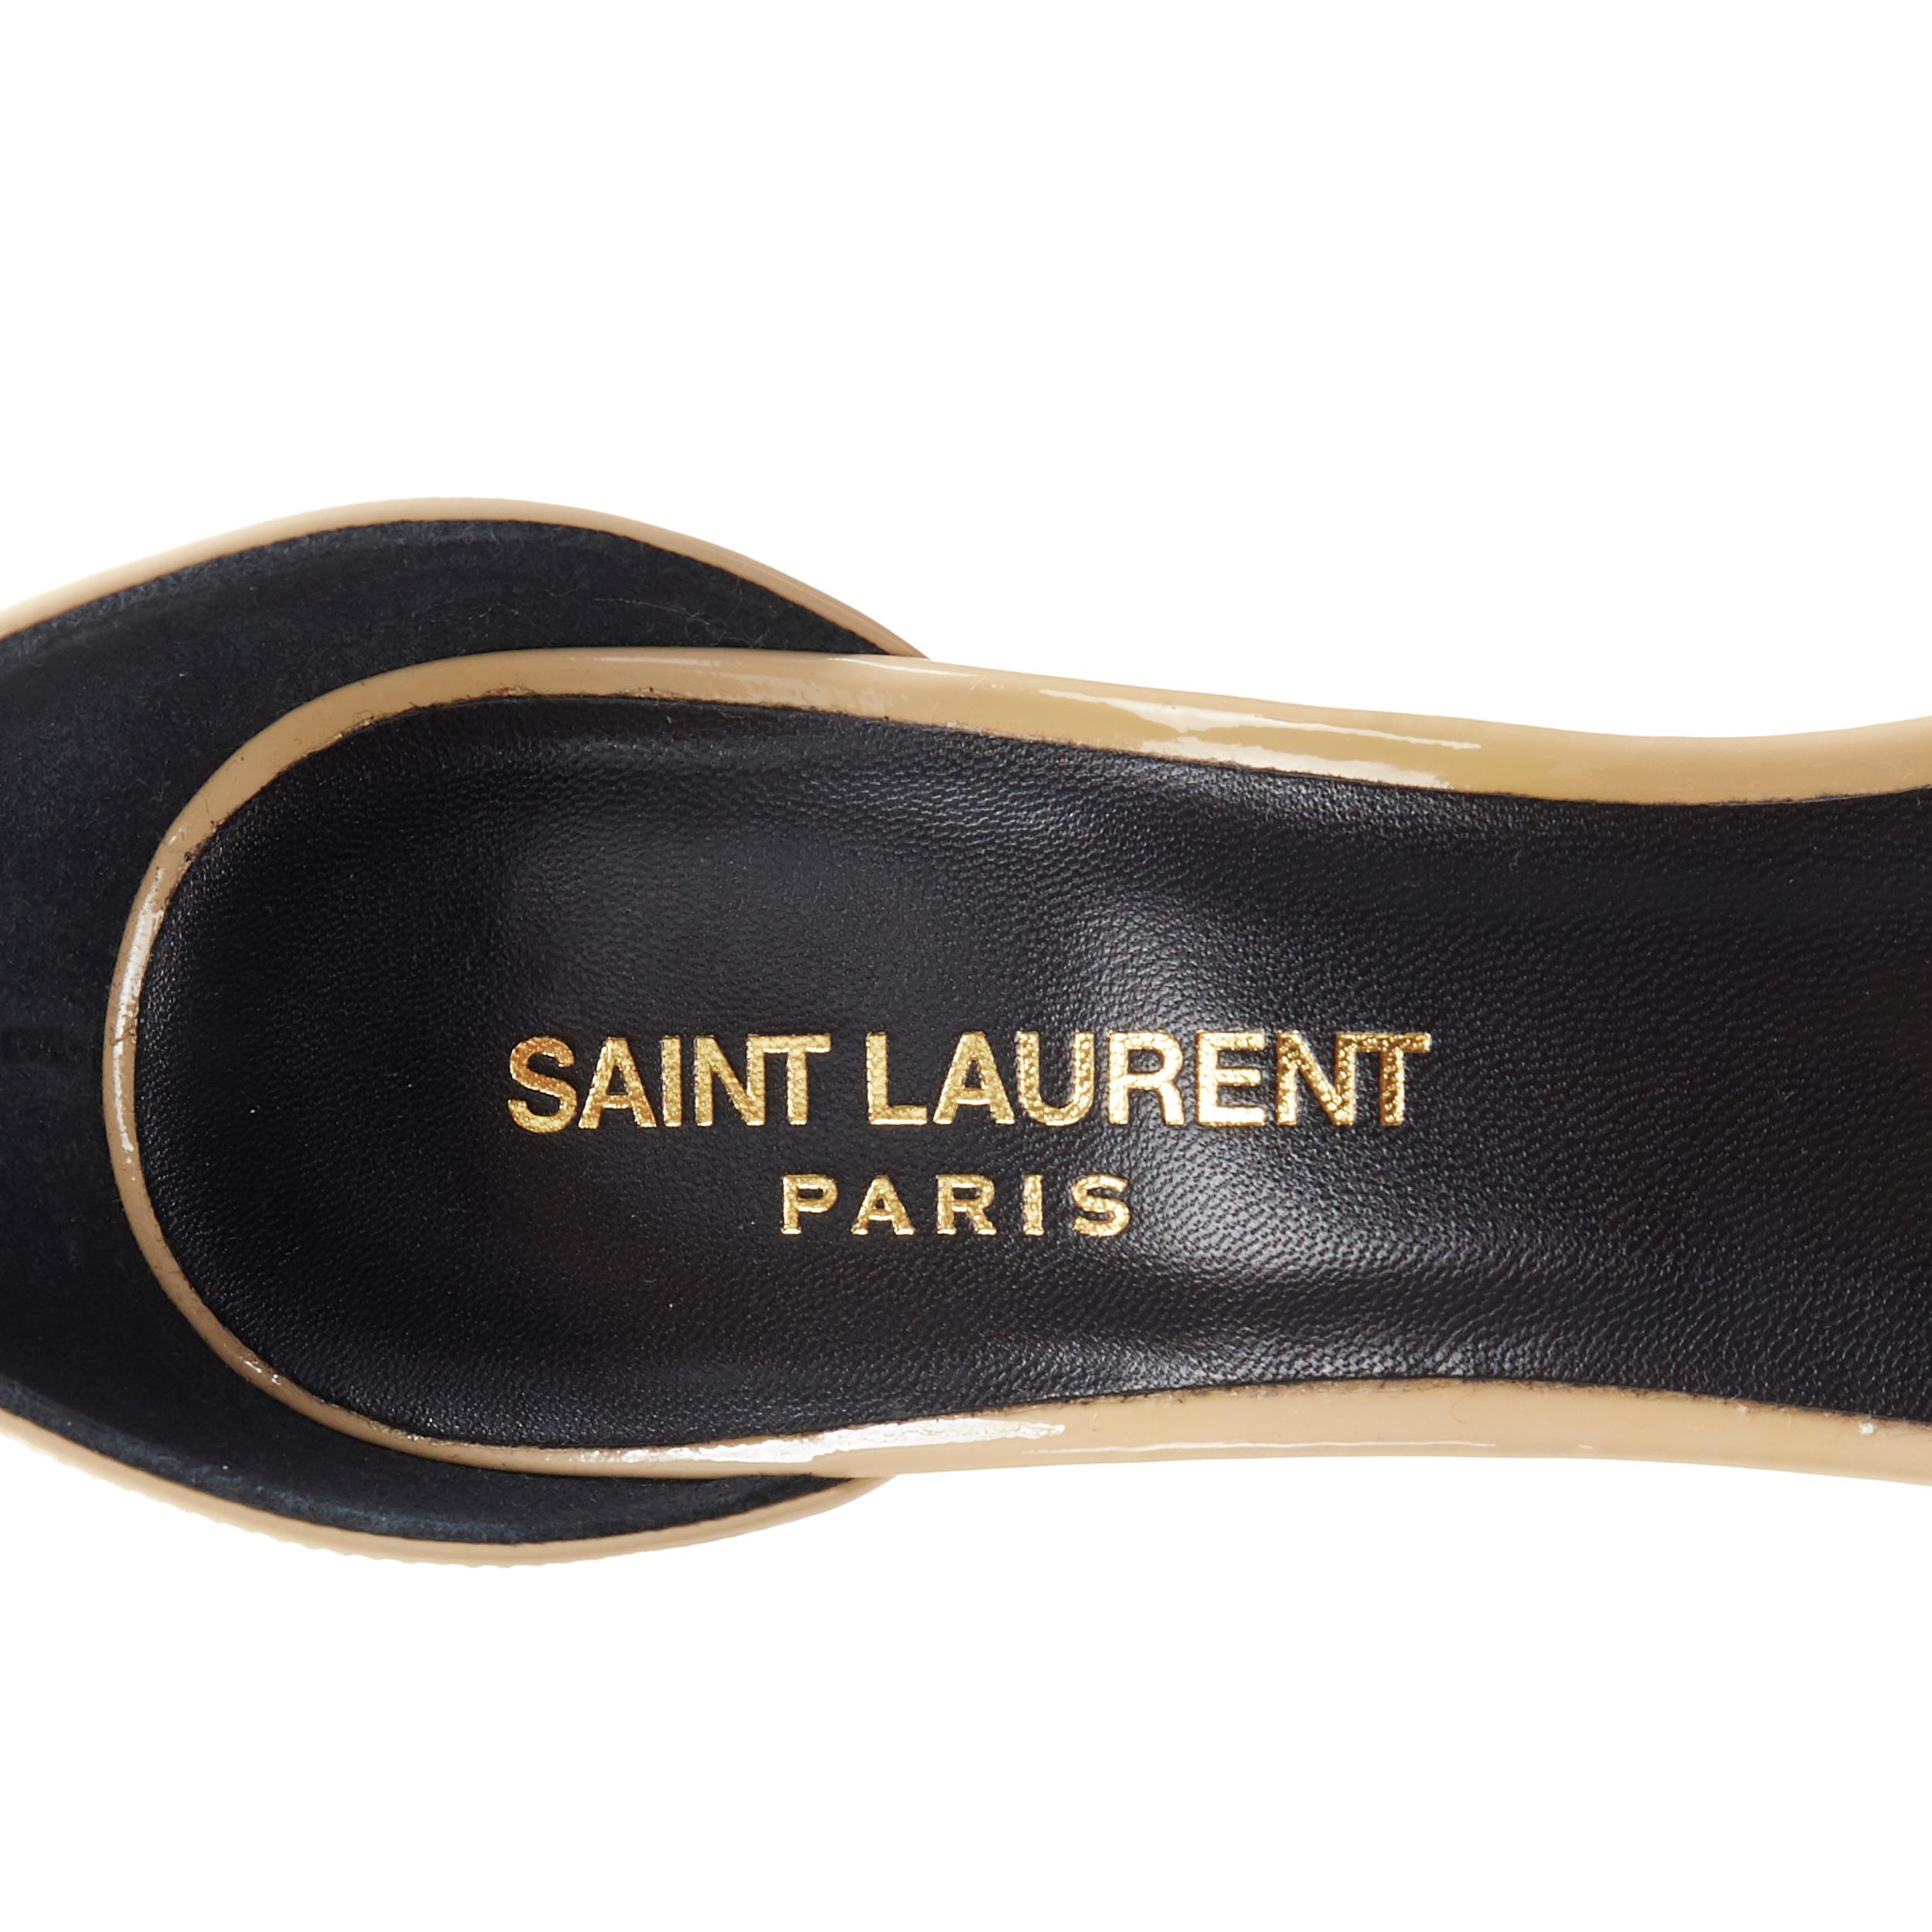 SAINT LAURENT PARIS  beige nude patent minimalist  strappy sandals EU36 4